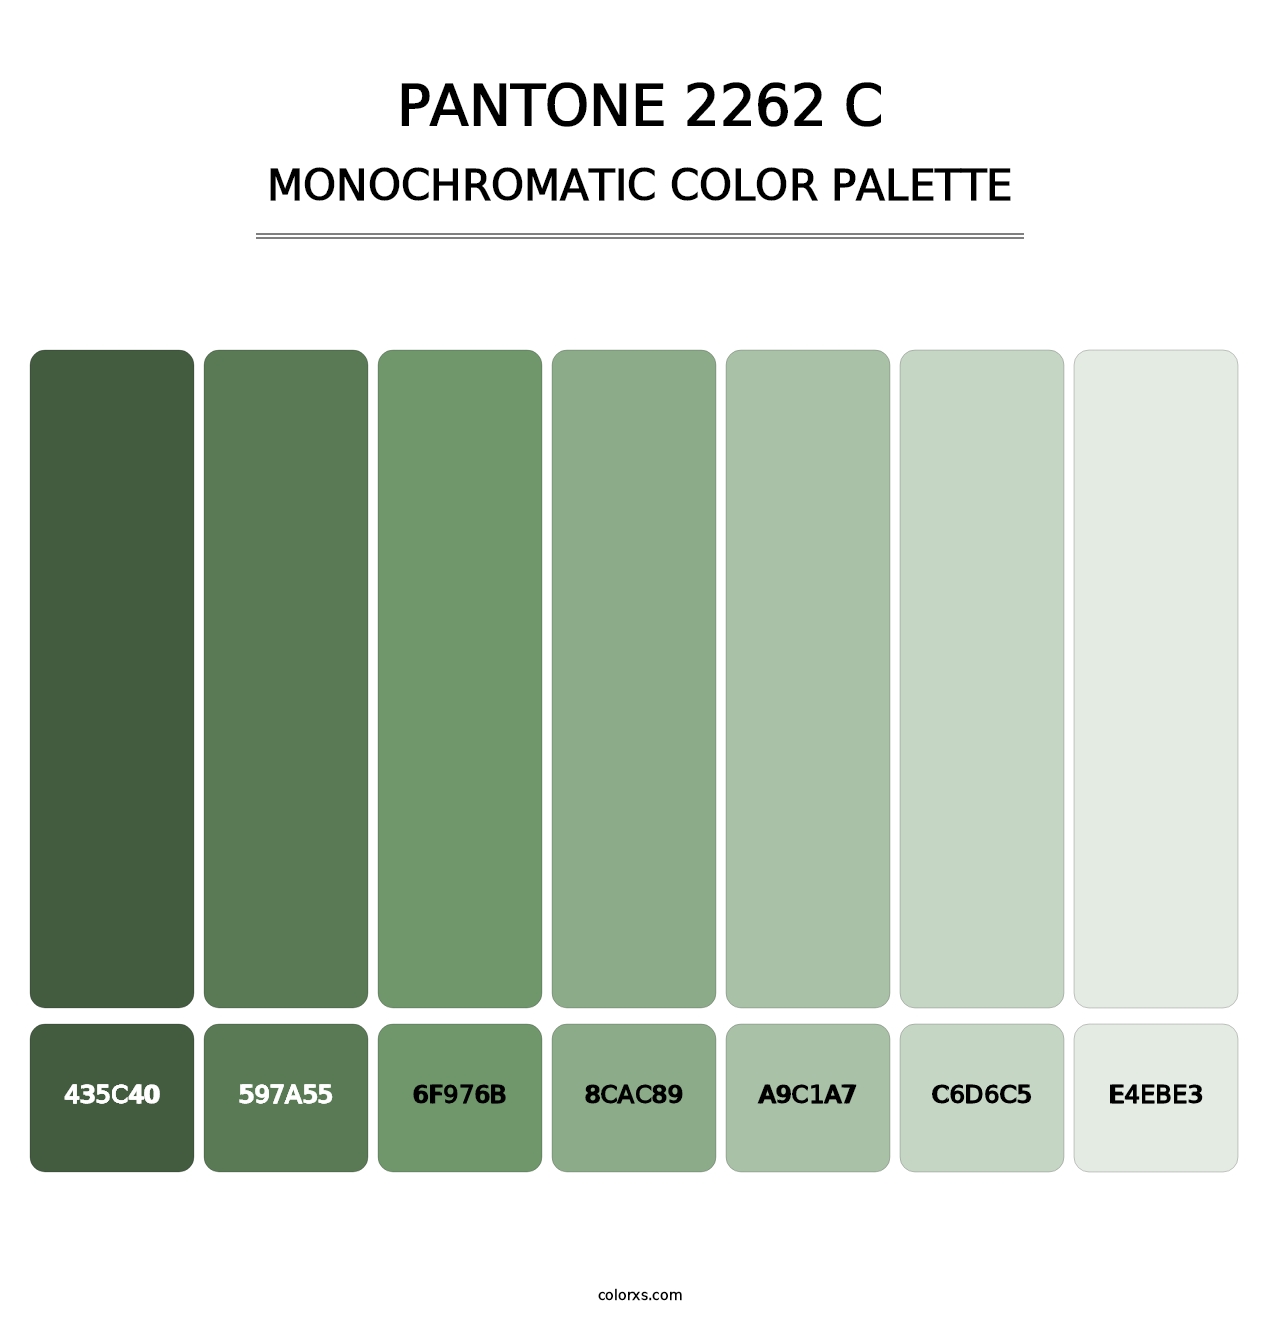 PANTONE 2262 C - Monochromatic Color Palette